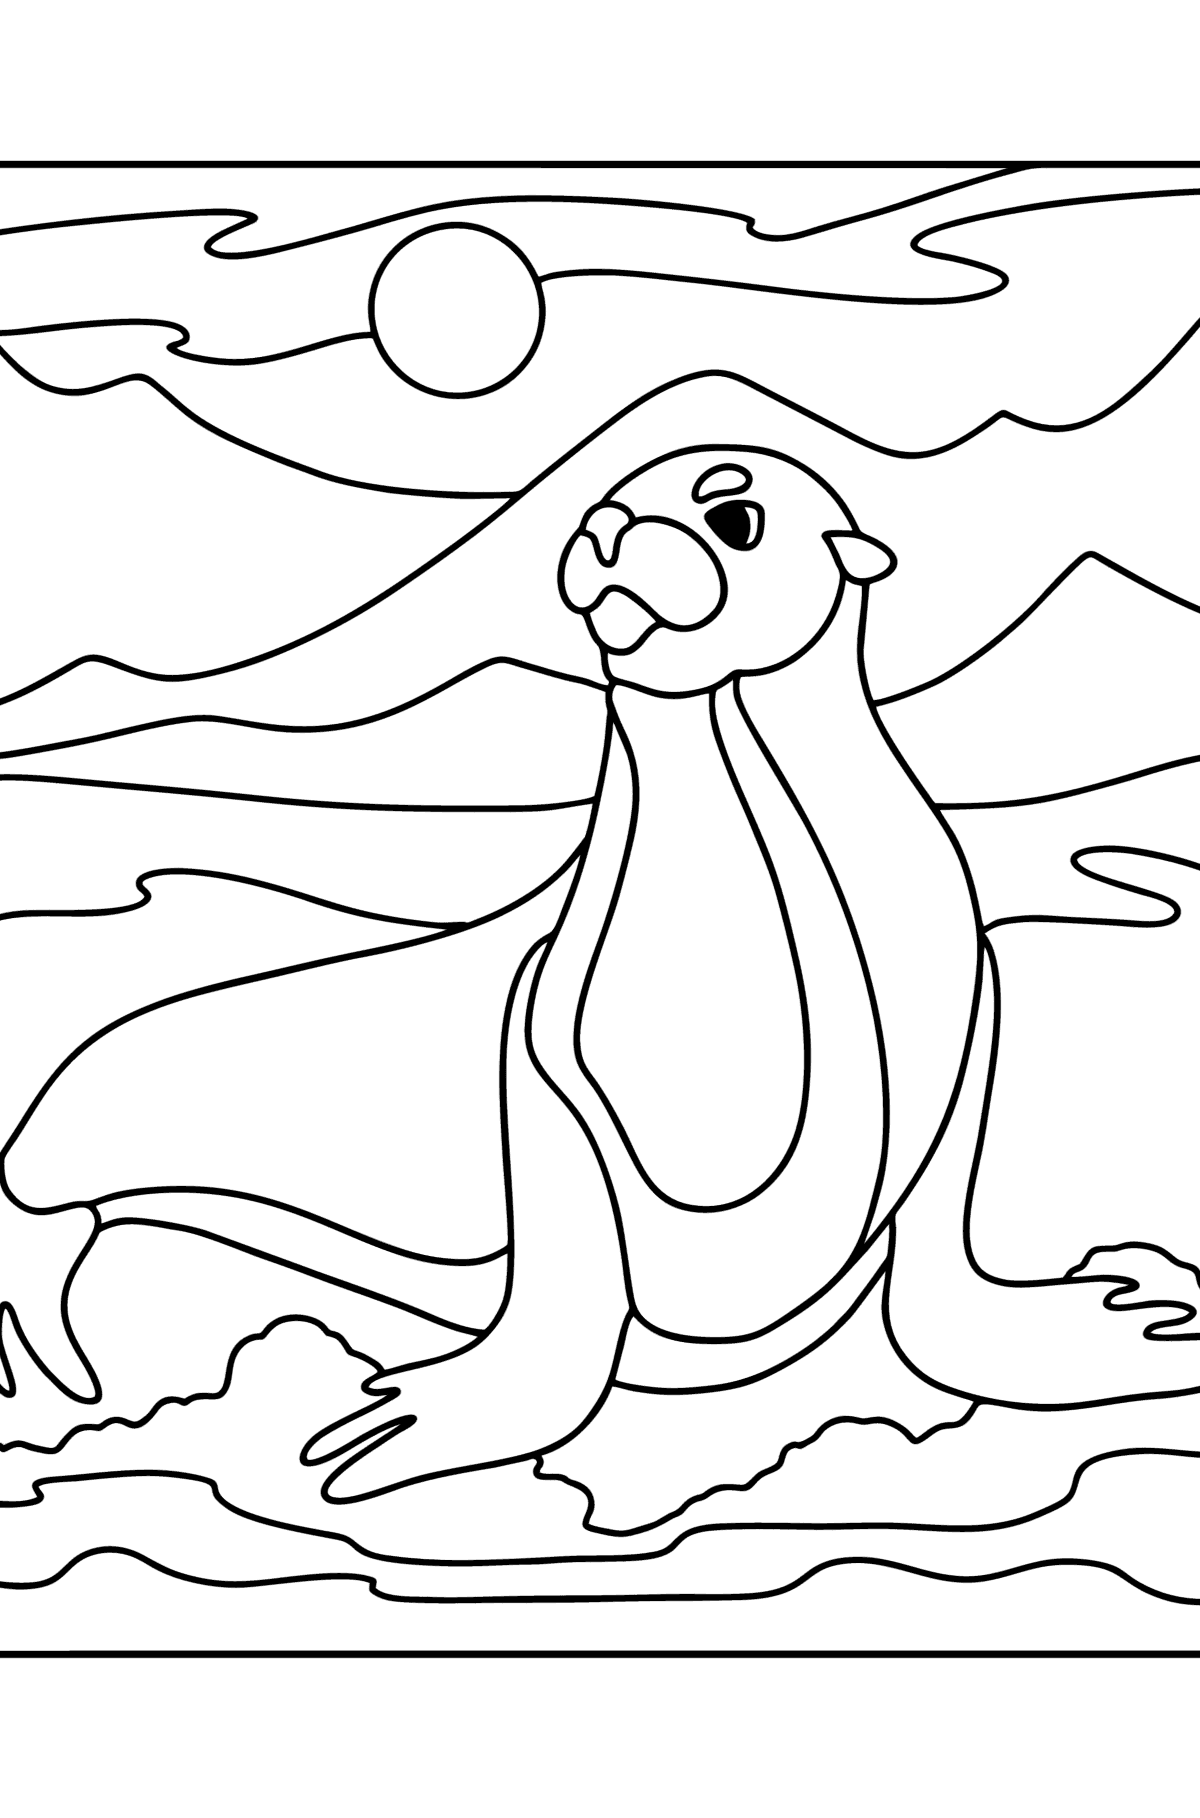 Boyama sayfası deniz aslanı - Boyamalar çocuklar için